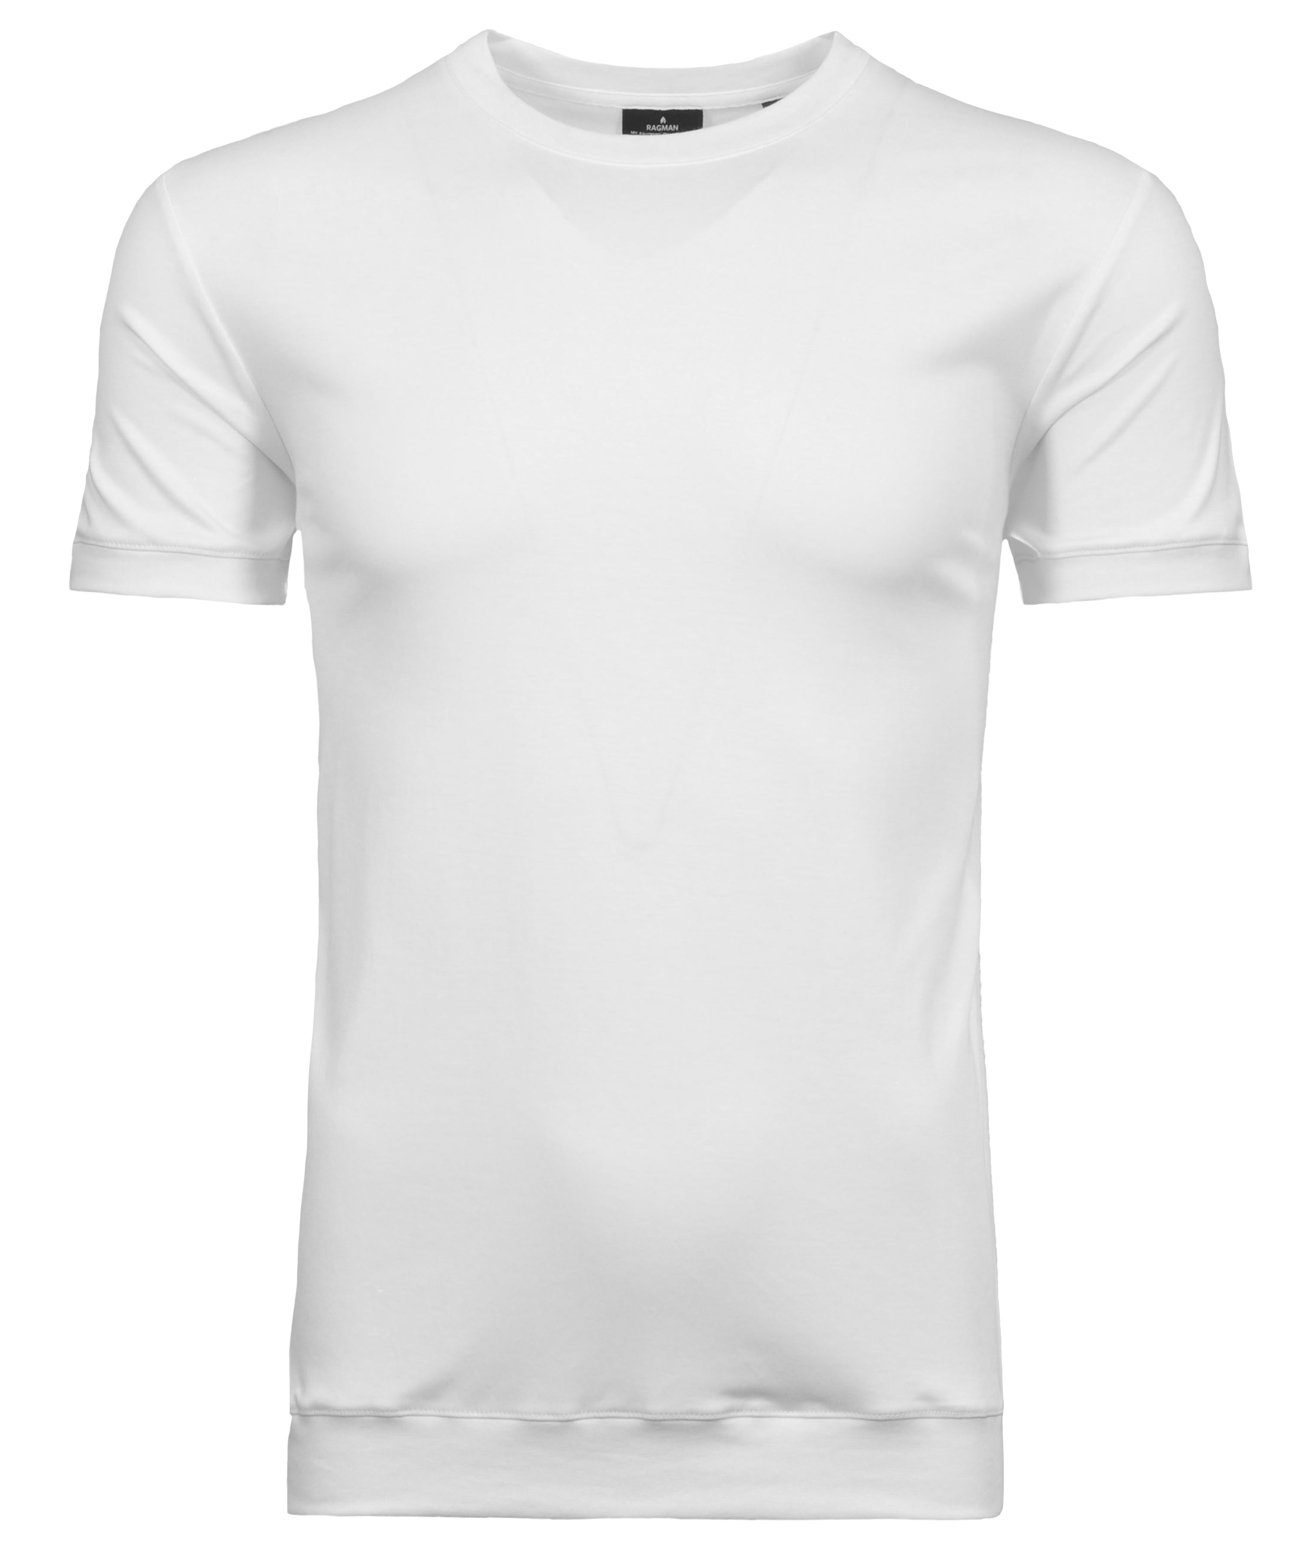 RAGMAN Weiss T-Shirt